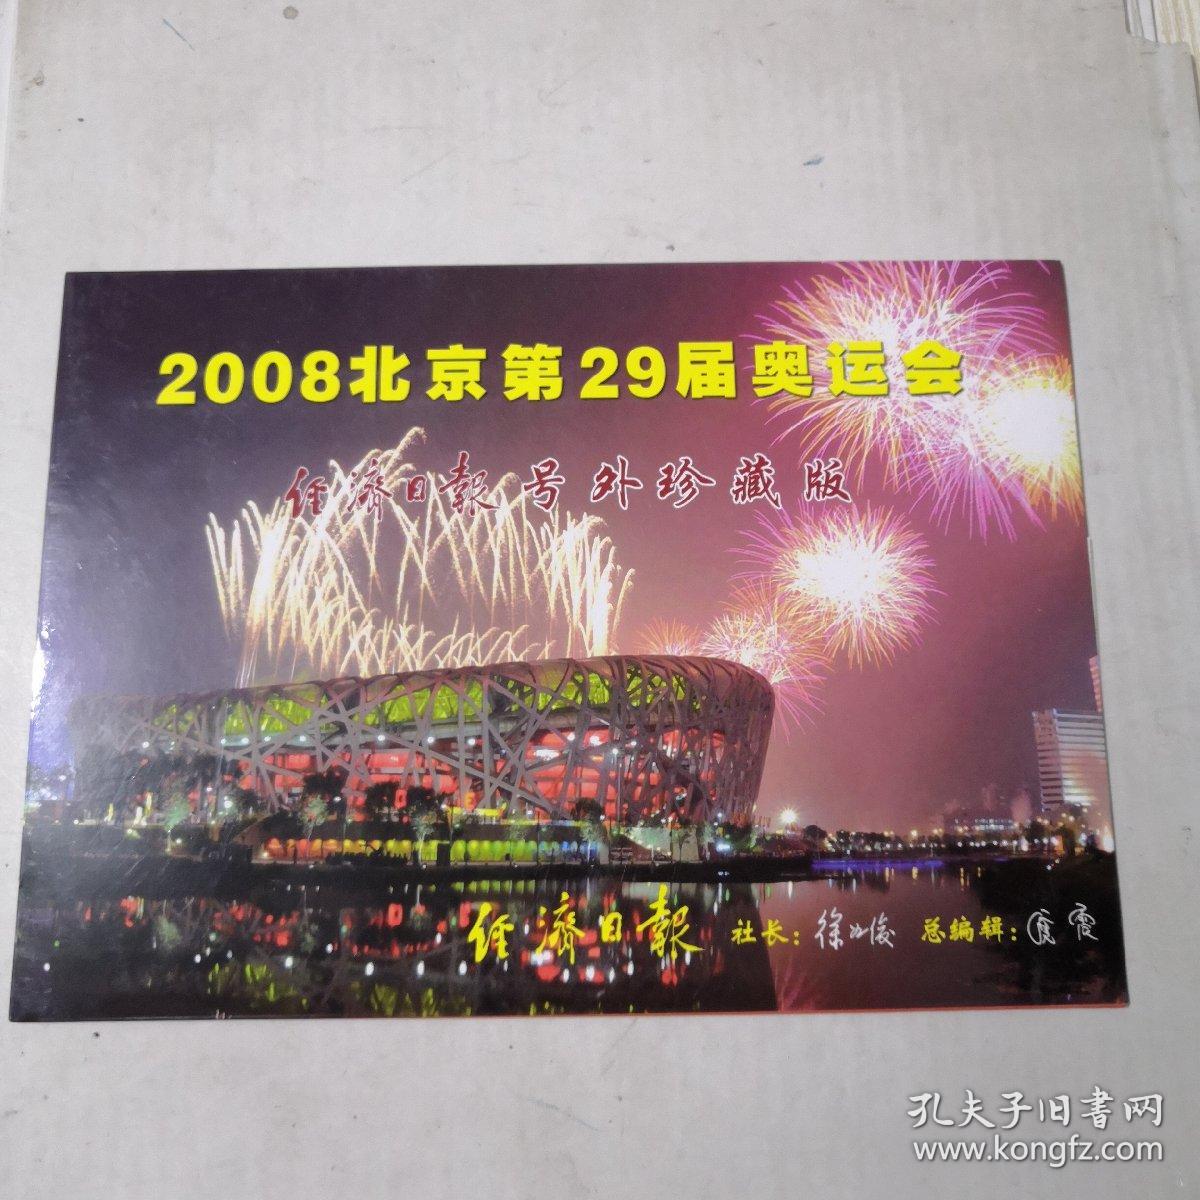 2008北京第29届奥运会 经济日报号外珍藏版